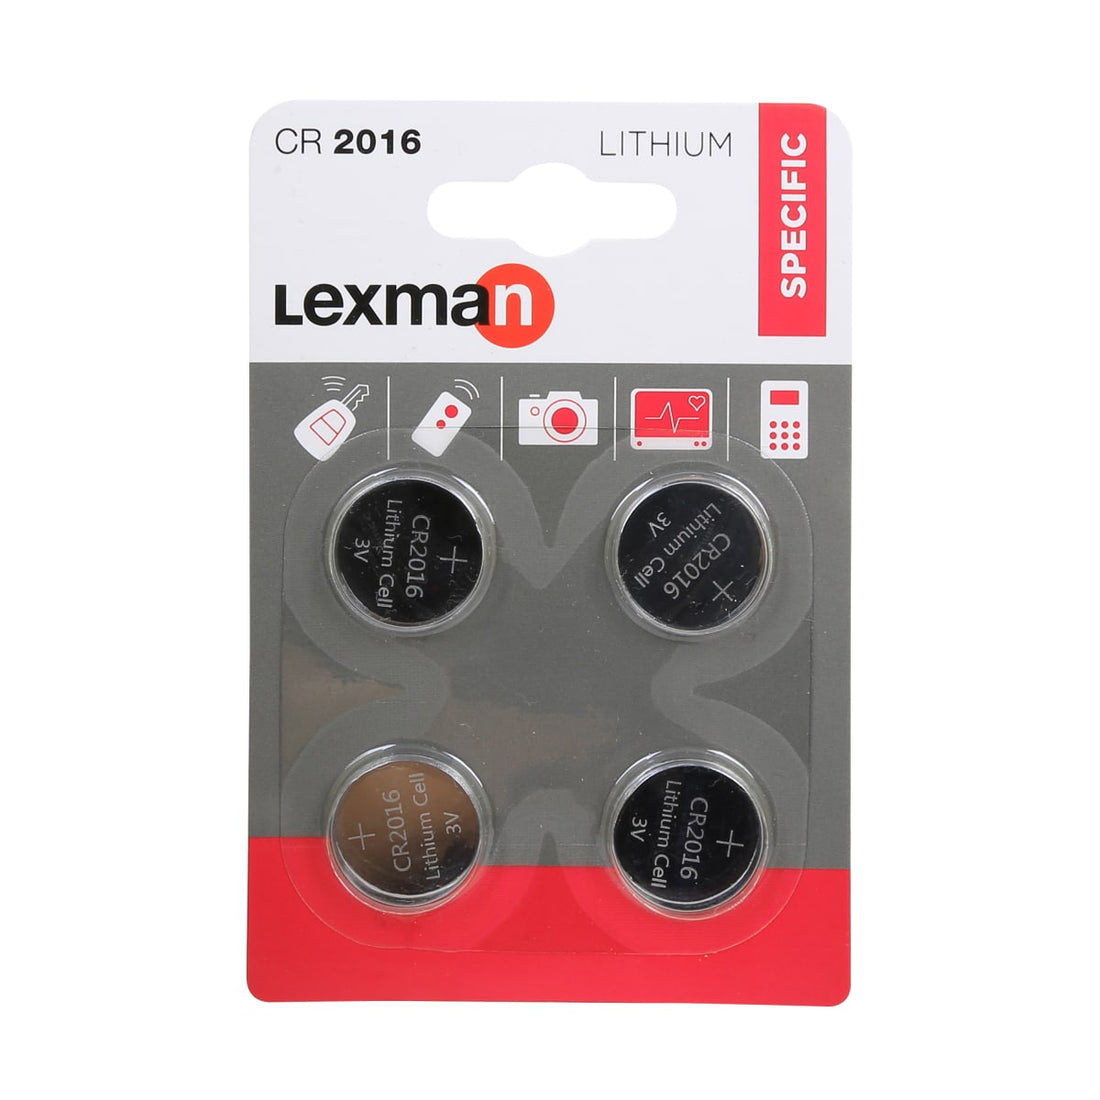 4 CR2016 LITHIUM LEXMAN BATTERIES